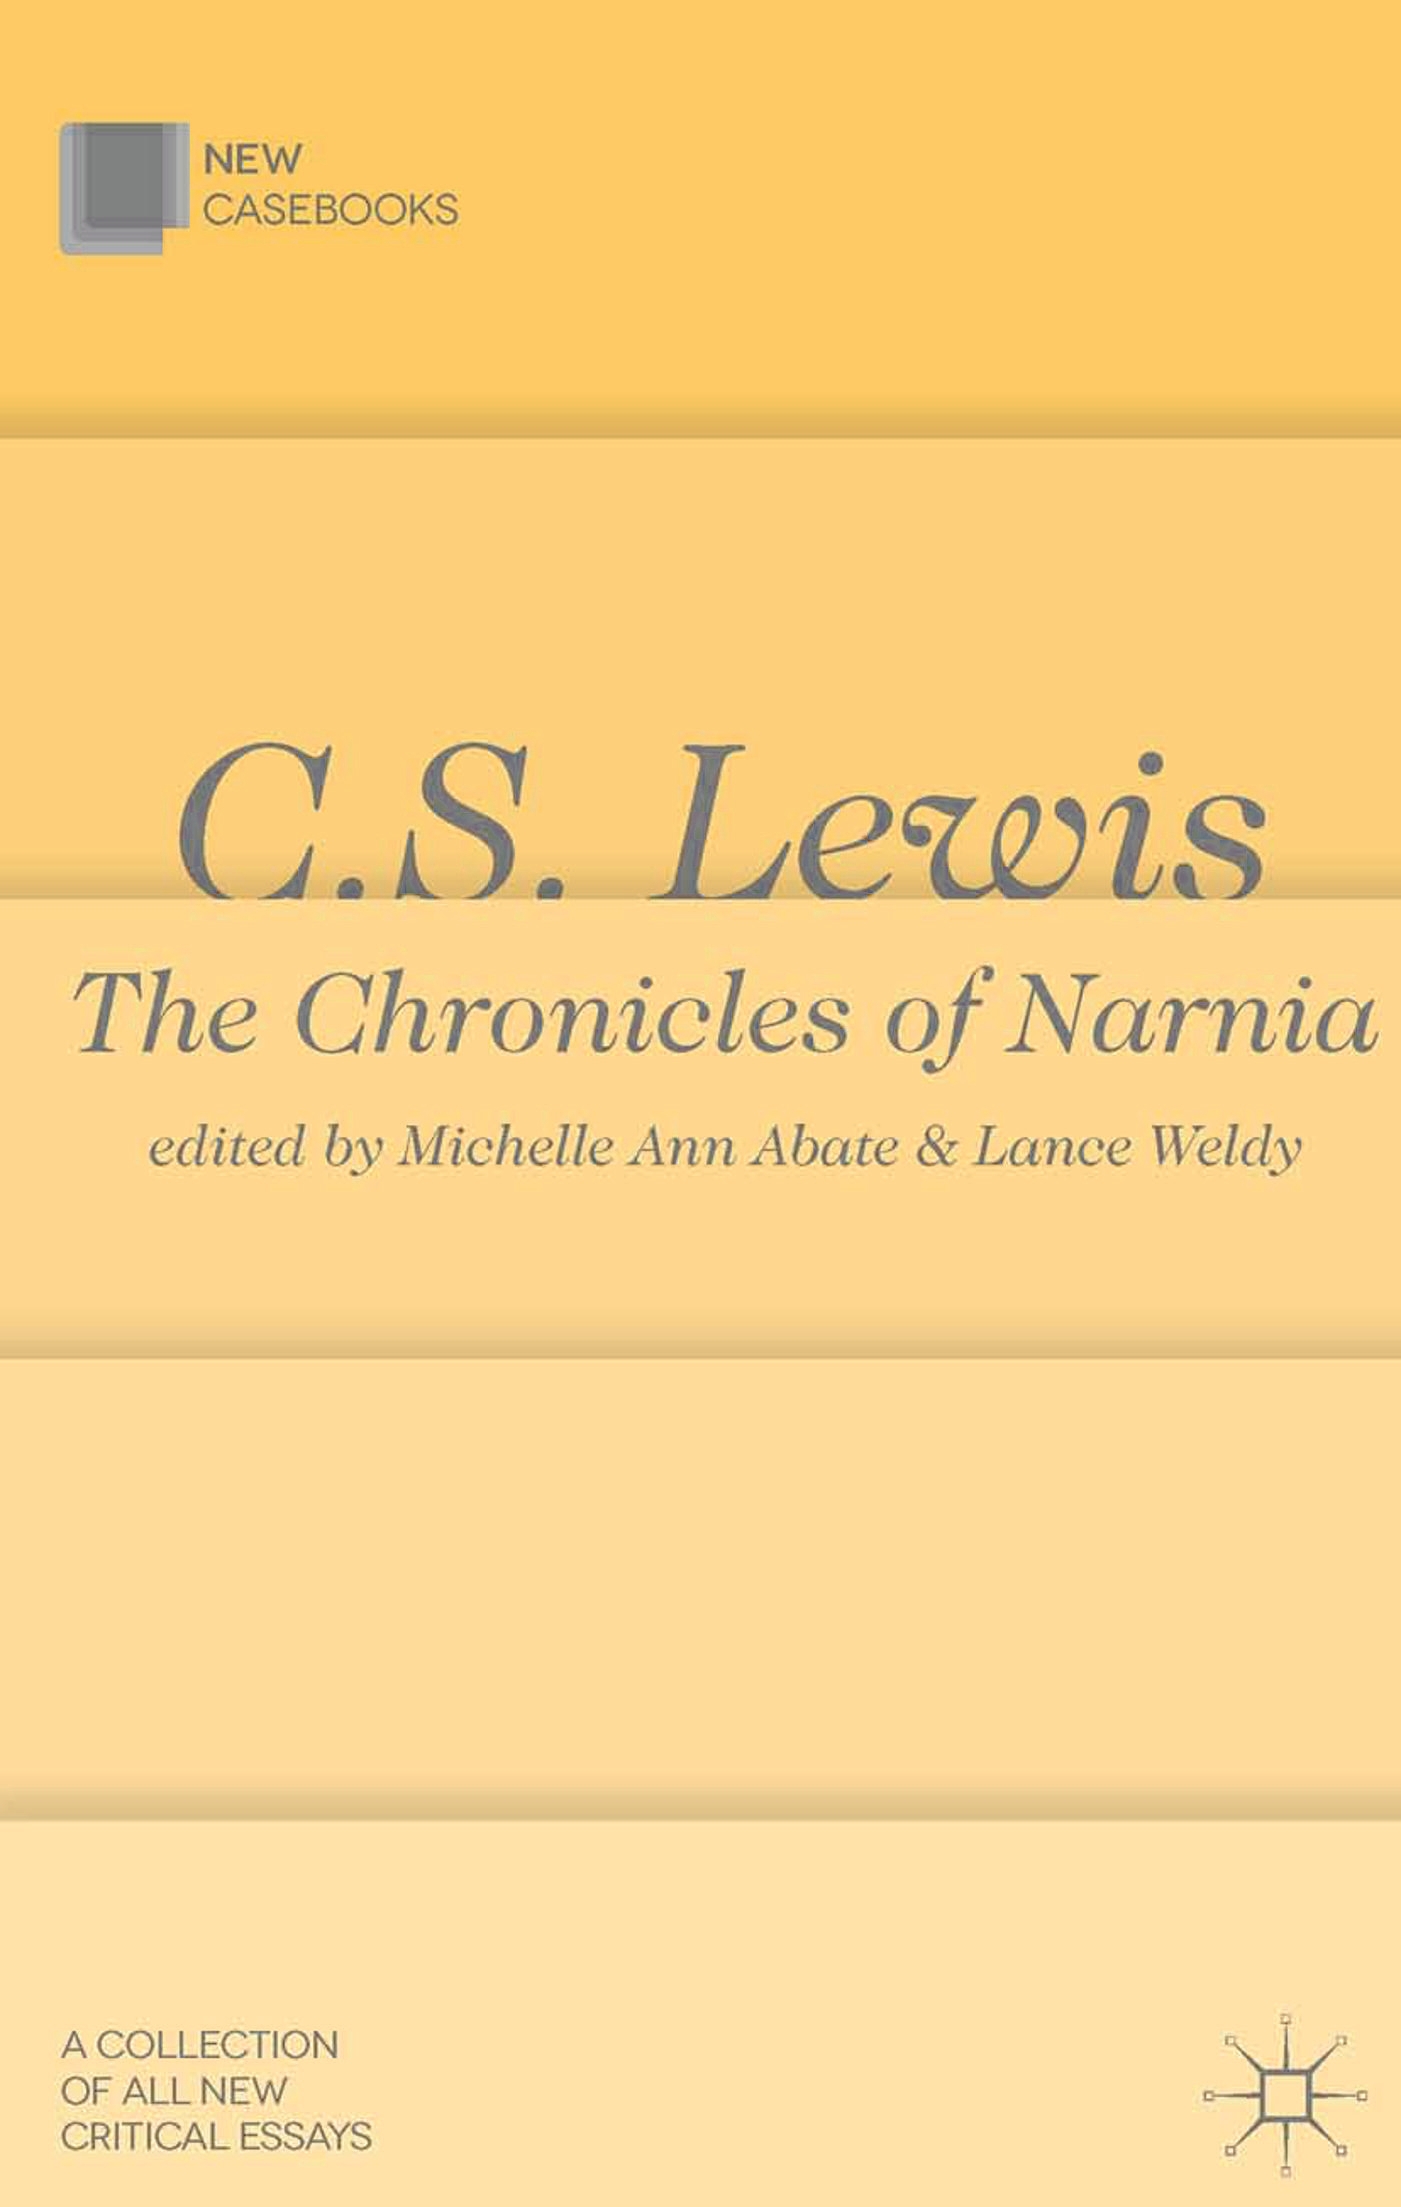 C.S. Lewis - 15-24.99